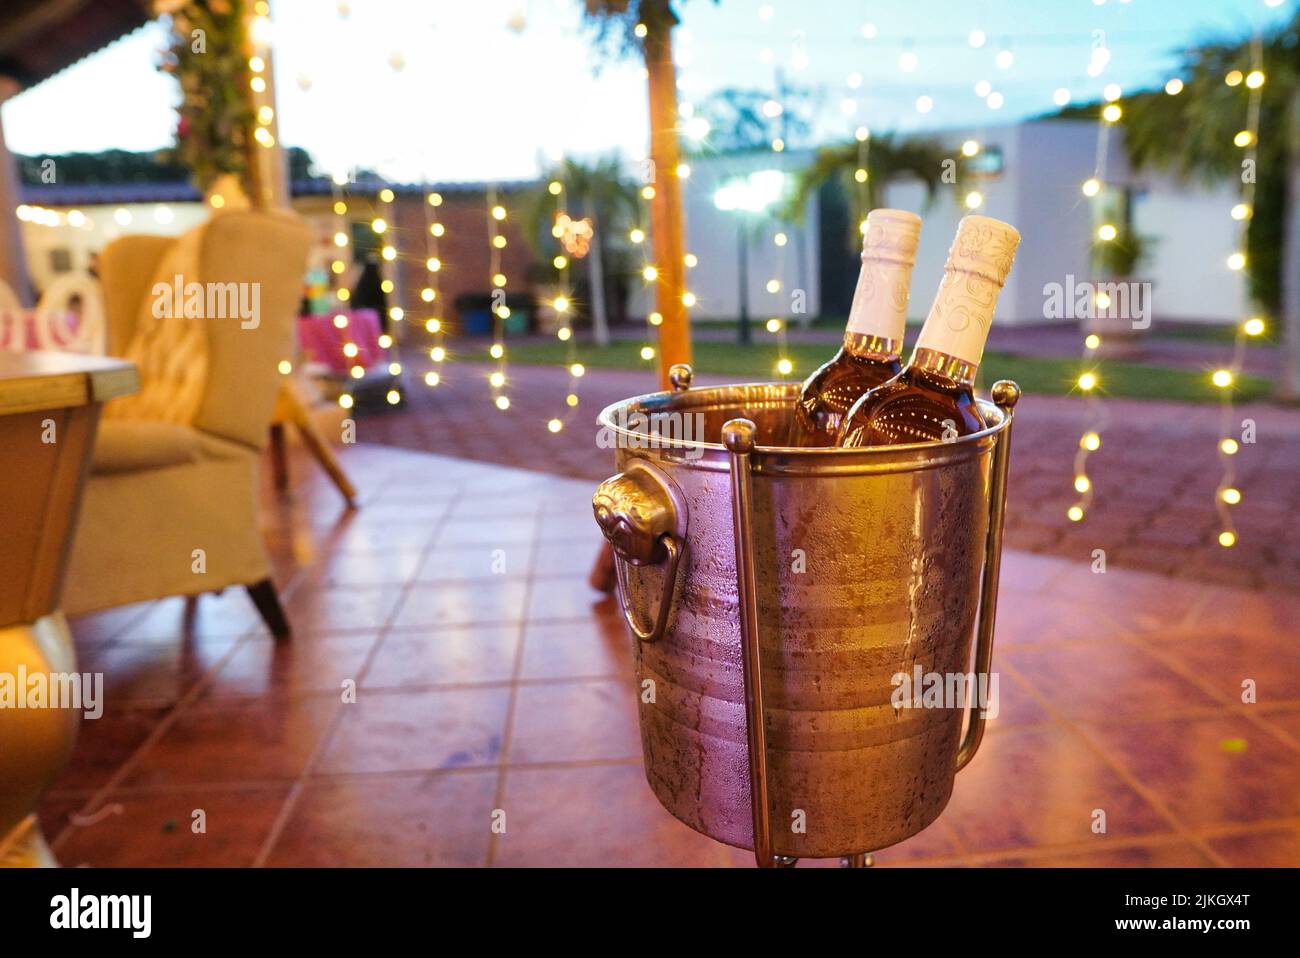 Un gros plan de 2 bouteilles de vin dans un seau à glace lors d'une réception de mariage Banque D'Images